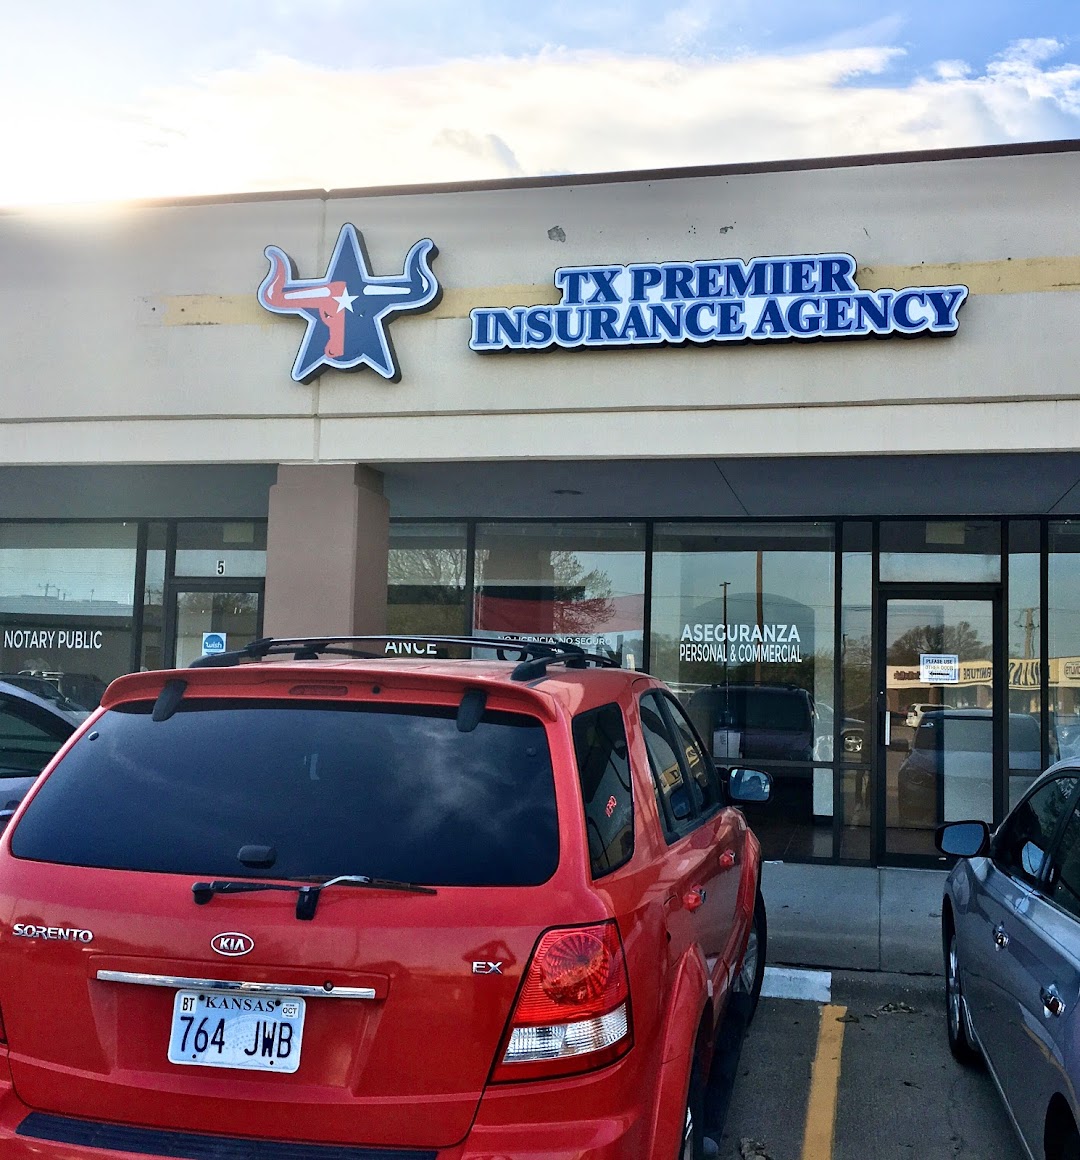 TX Premier Insurance Agency